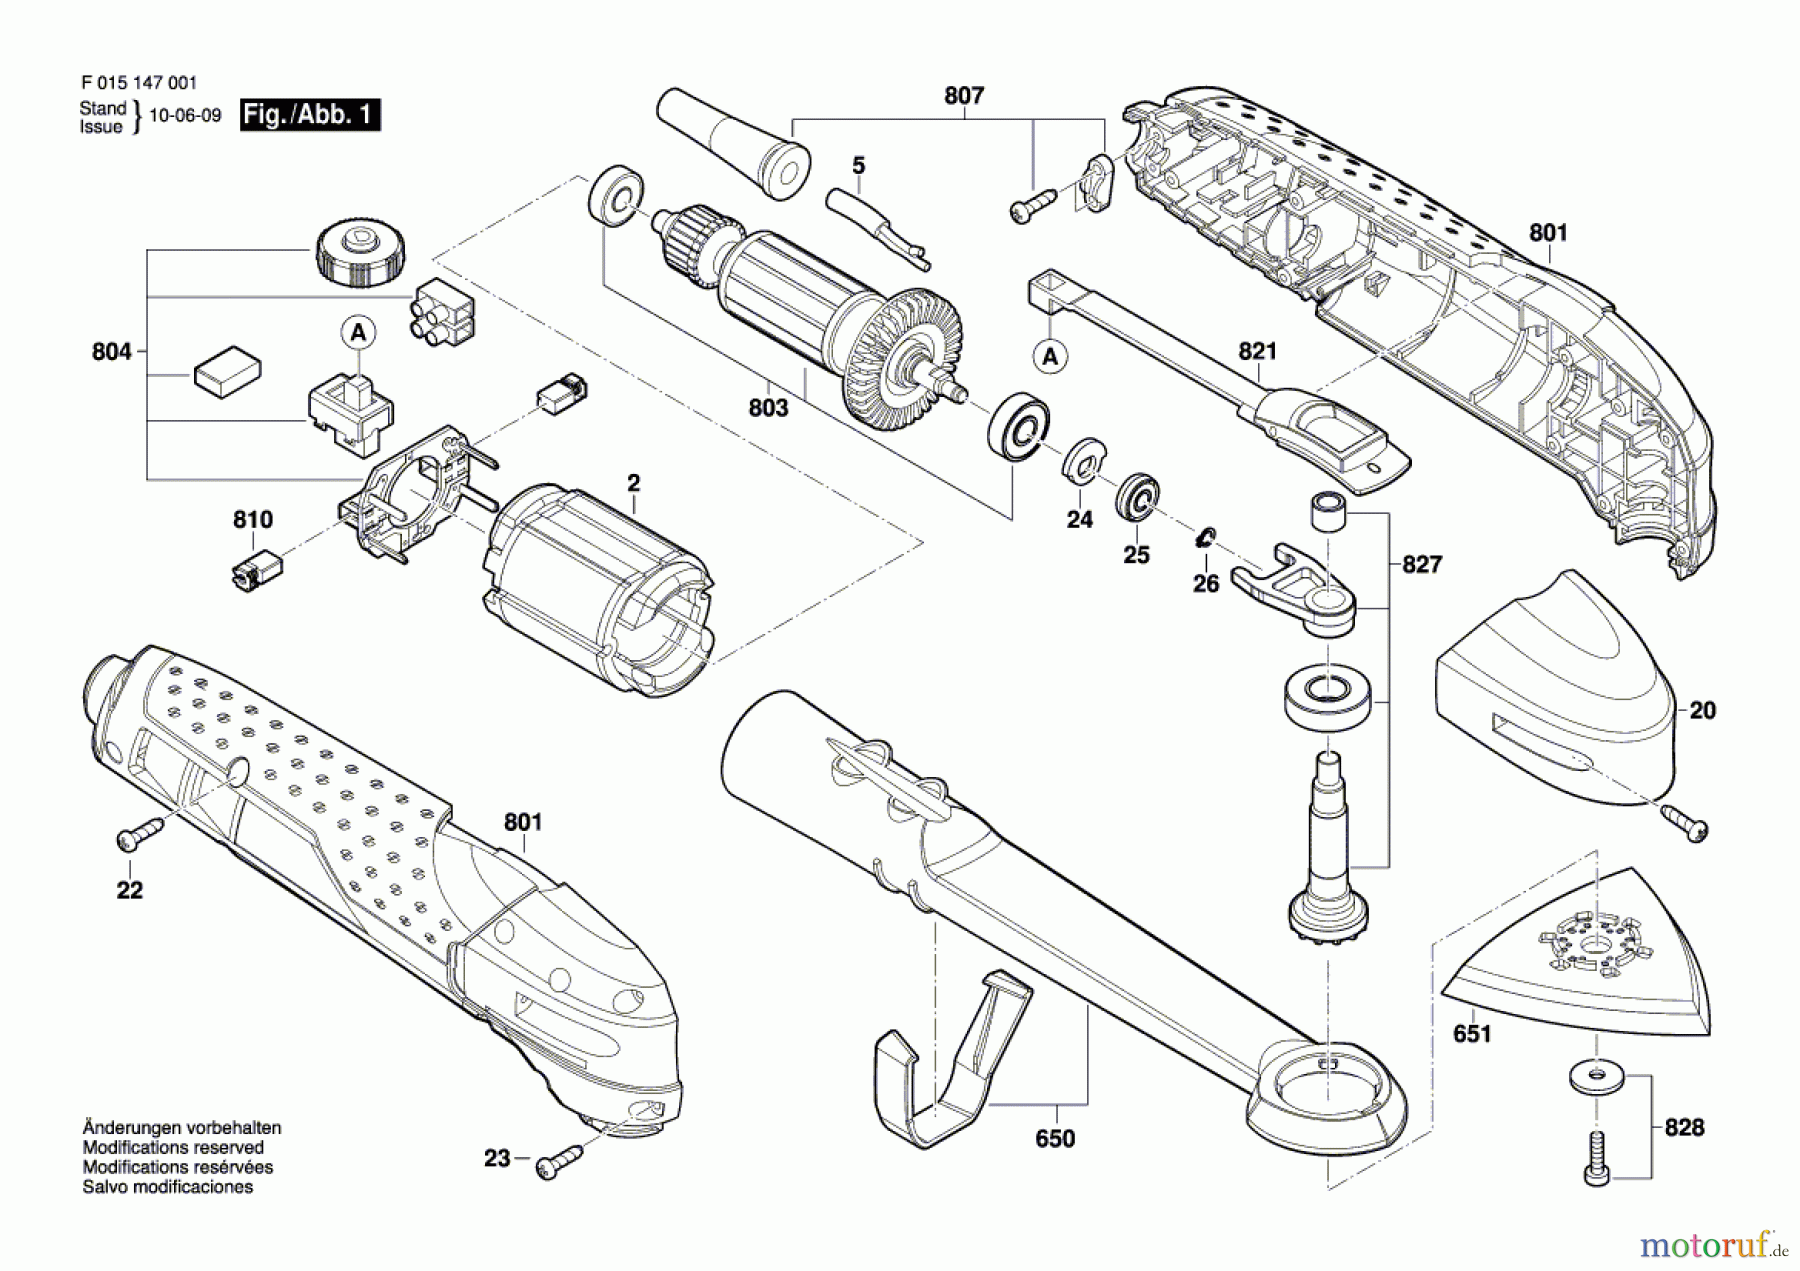  Bosch Werkzeug Multifunktionswerkzeug 1490 Seite 1